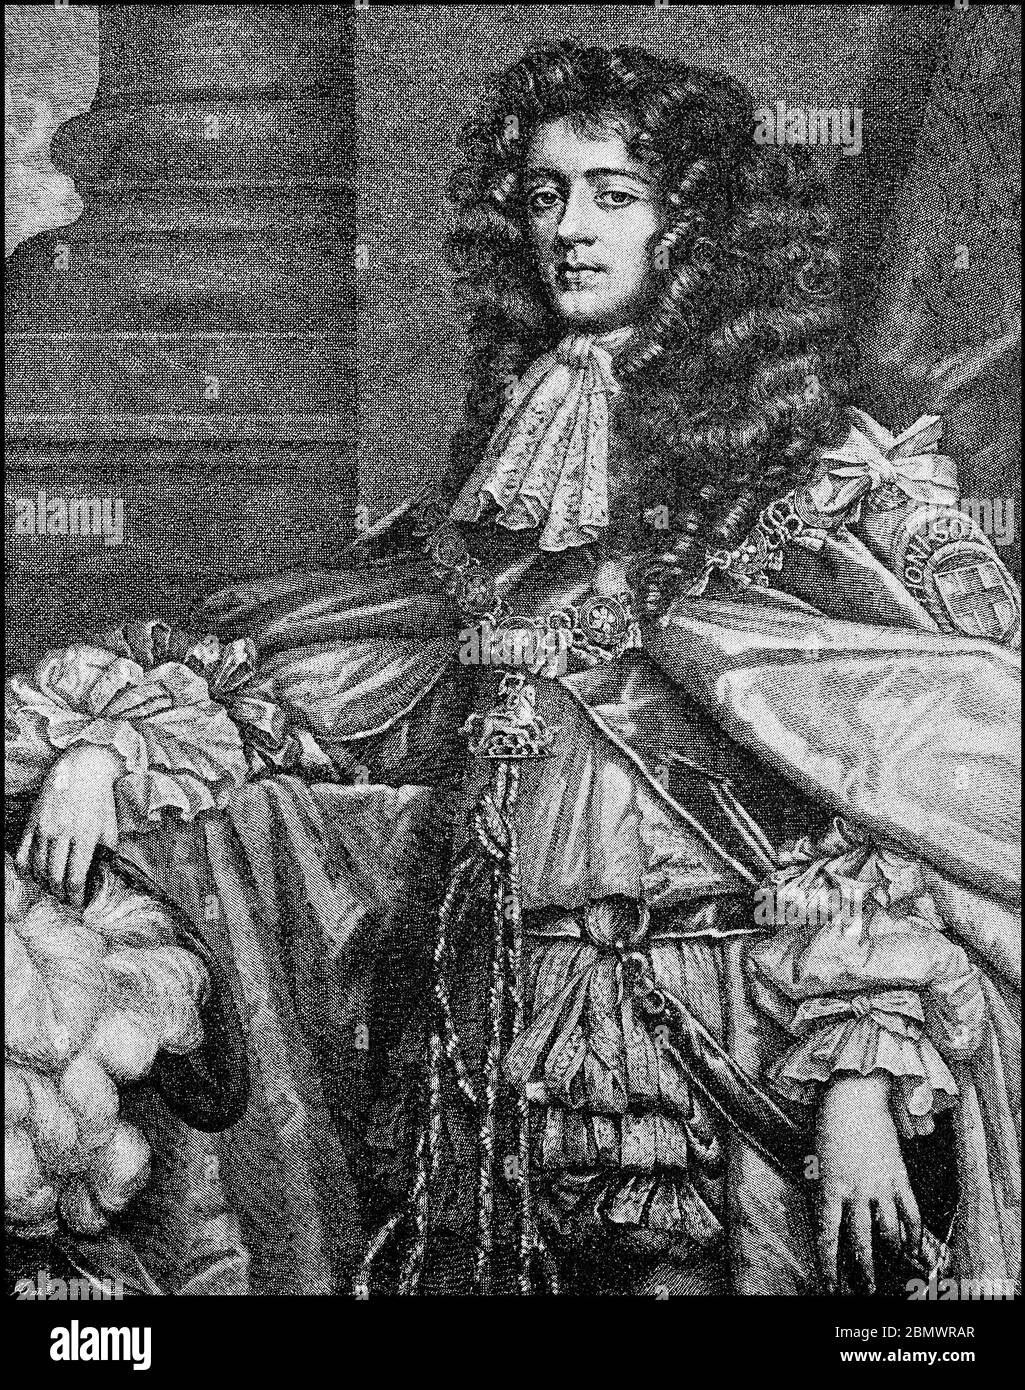 James Scott, 1. Herzog von Monmouth, Herzog von Buccleuch, 9. April 1649 - 15. Juli 1685, war ein illegitimer Sohn von König Charles II von England, englischer Thronvorführer, General und Führer der Monmouth Rebellion. / James Scott, 1. Herzog von Monmouth, Herzog von Buccleuch, 9. 1649. Bis 15. April. Juli 1685, war ein unehelicher Sohn von König Karl II. Von England, englischer Thronprätendent, Feldherr und Führer der Monmouth Rebellion, historisch, historisch, digital verbesserte Reproduktion eines Originals aus dem 19. Jahrhundert / Digitale Reproduktion einer Originalvorlage aus dem 19. Jahrhundert, Stockfoto